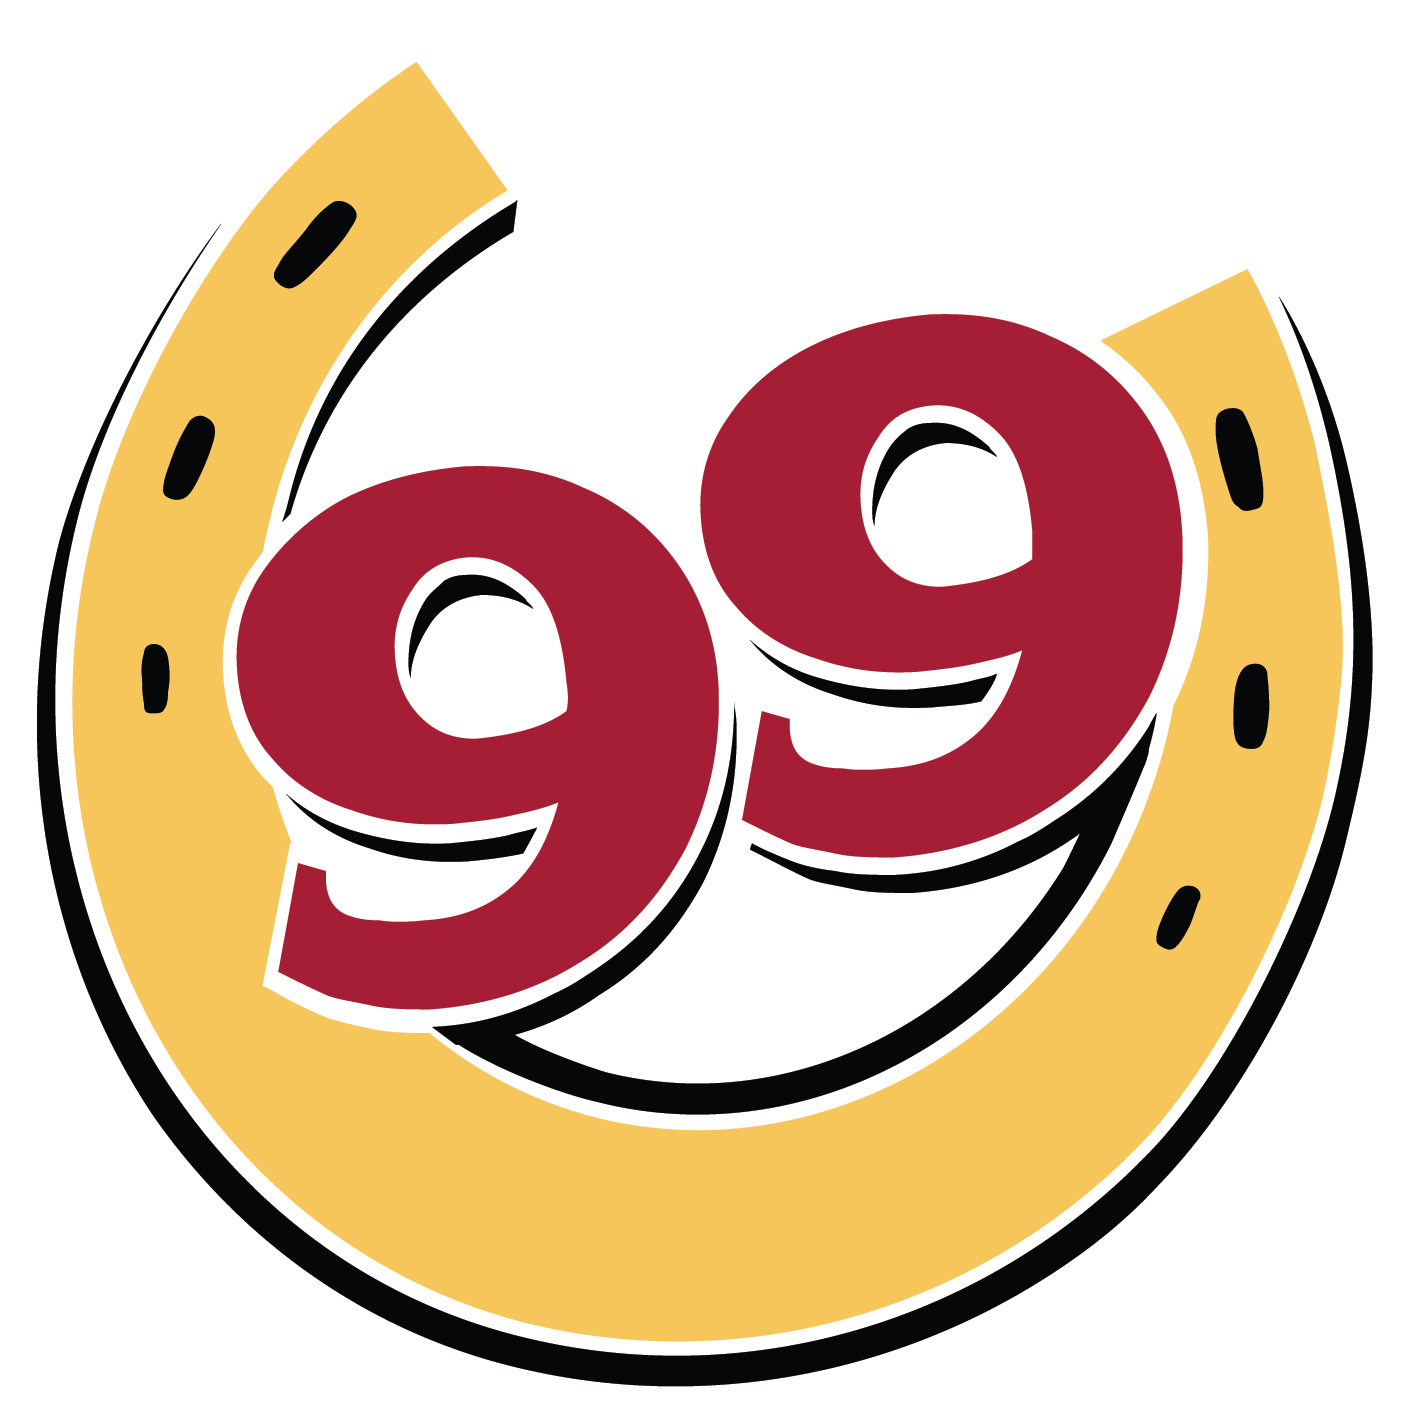 Ninety Nine Restaurant & Pub Logo